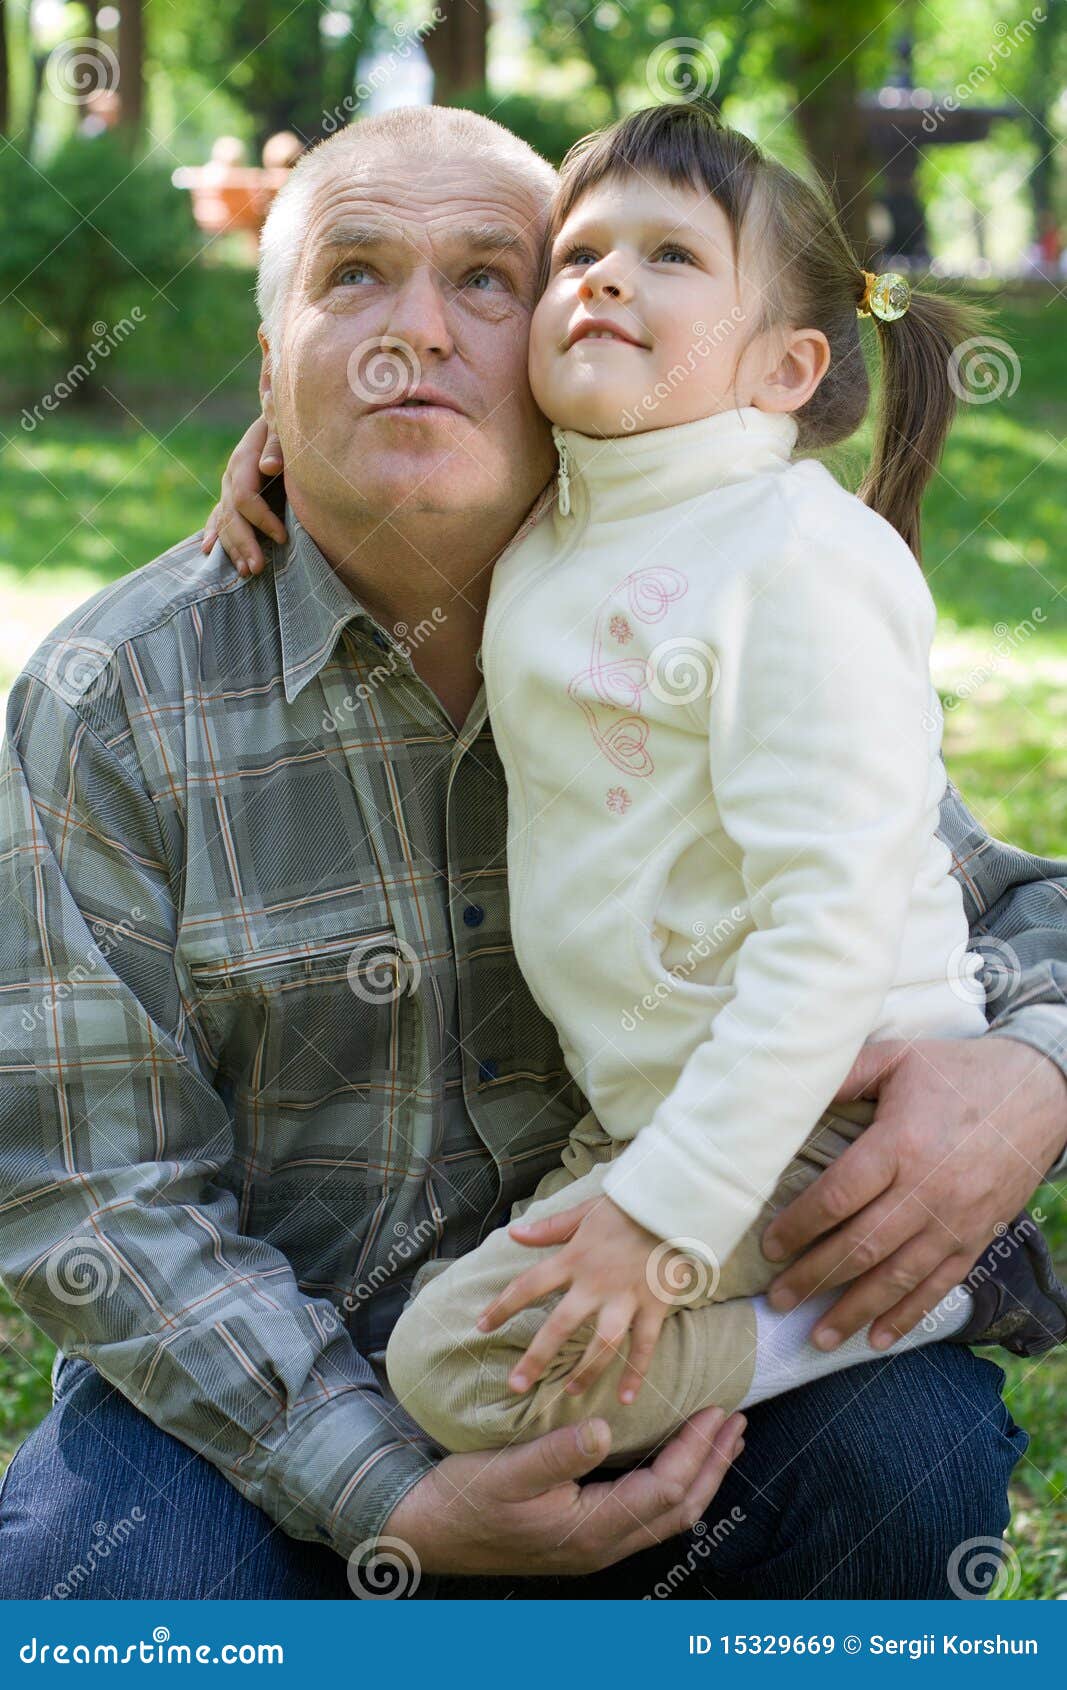 старик и малолетка минет фото 77